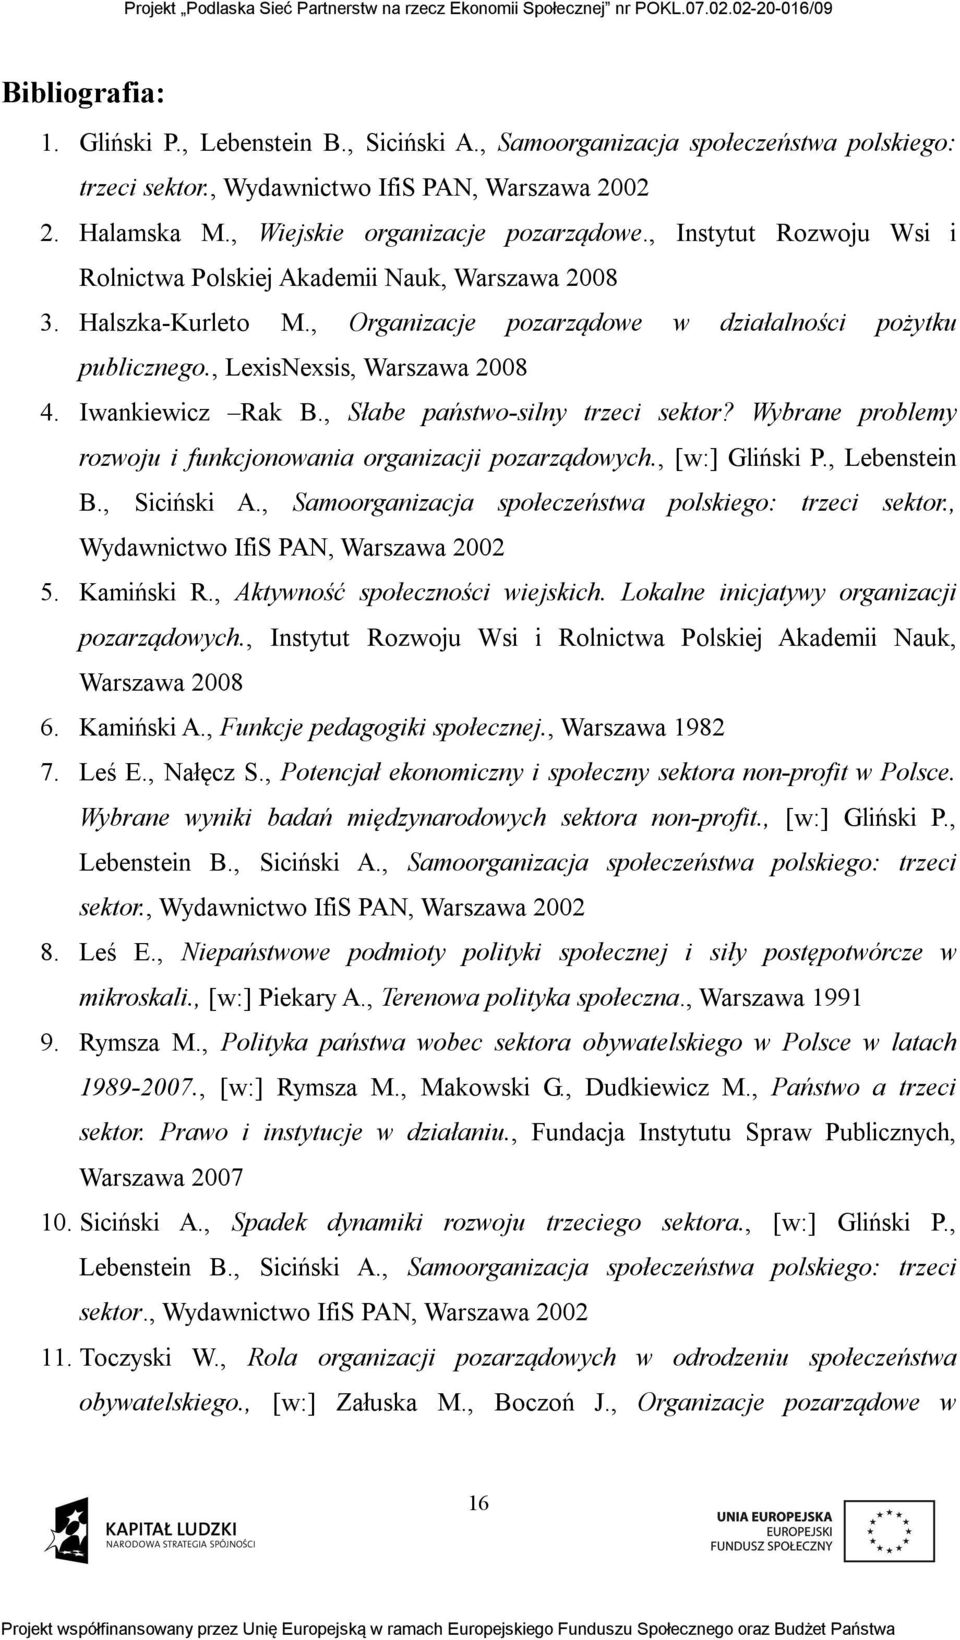 Iwankiewicz Rak B., Słabe państwo-silny trzeci sektor? Wybrane problemy rozwoju i funkcjonowania organizacji pozarządowych., [w:] Gliński P., Lebenstein B., Siciński A.